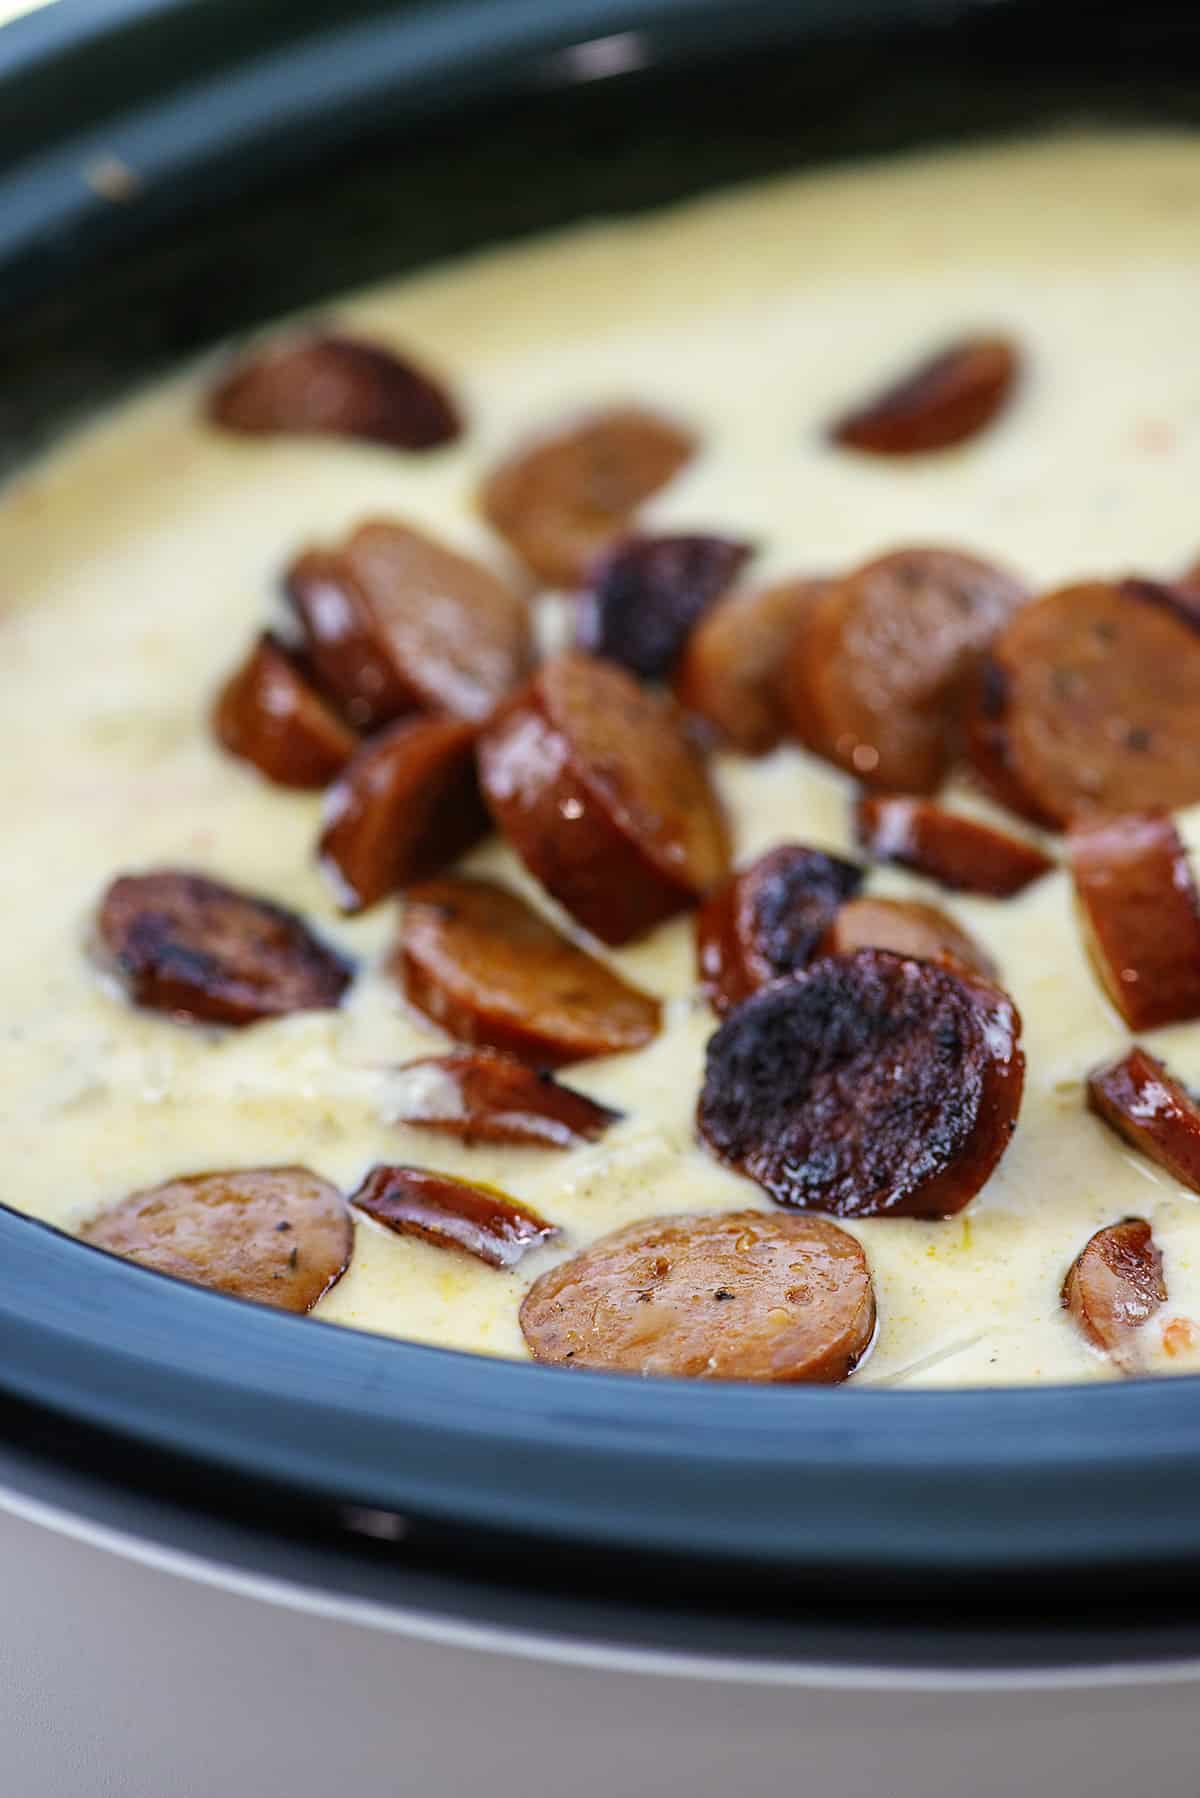 Sausage in potato soup in crockpt.